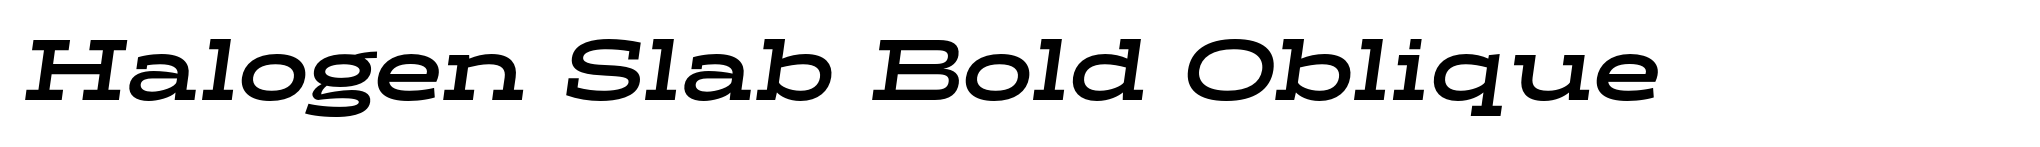 Halogen Slab Bold Oblique image